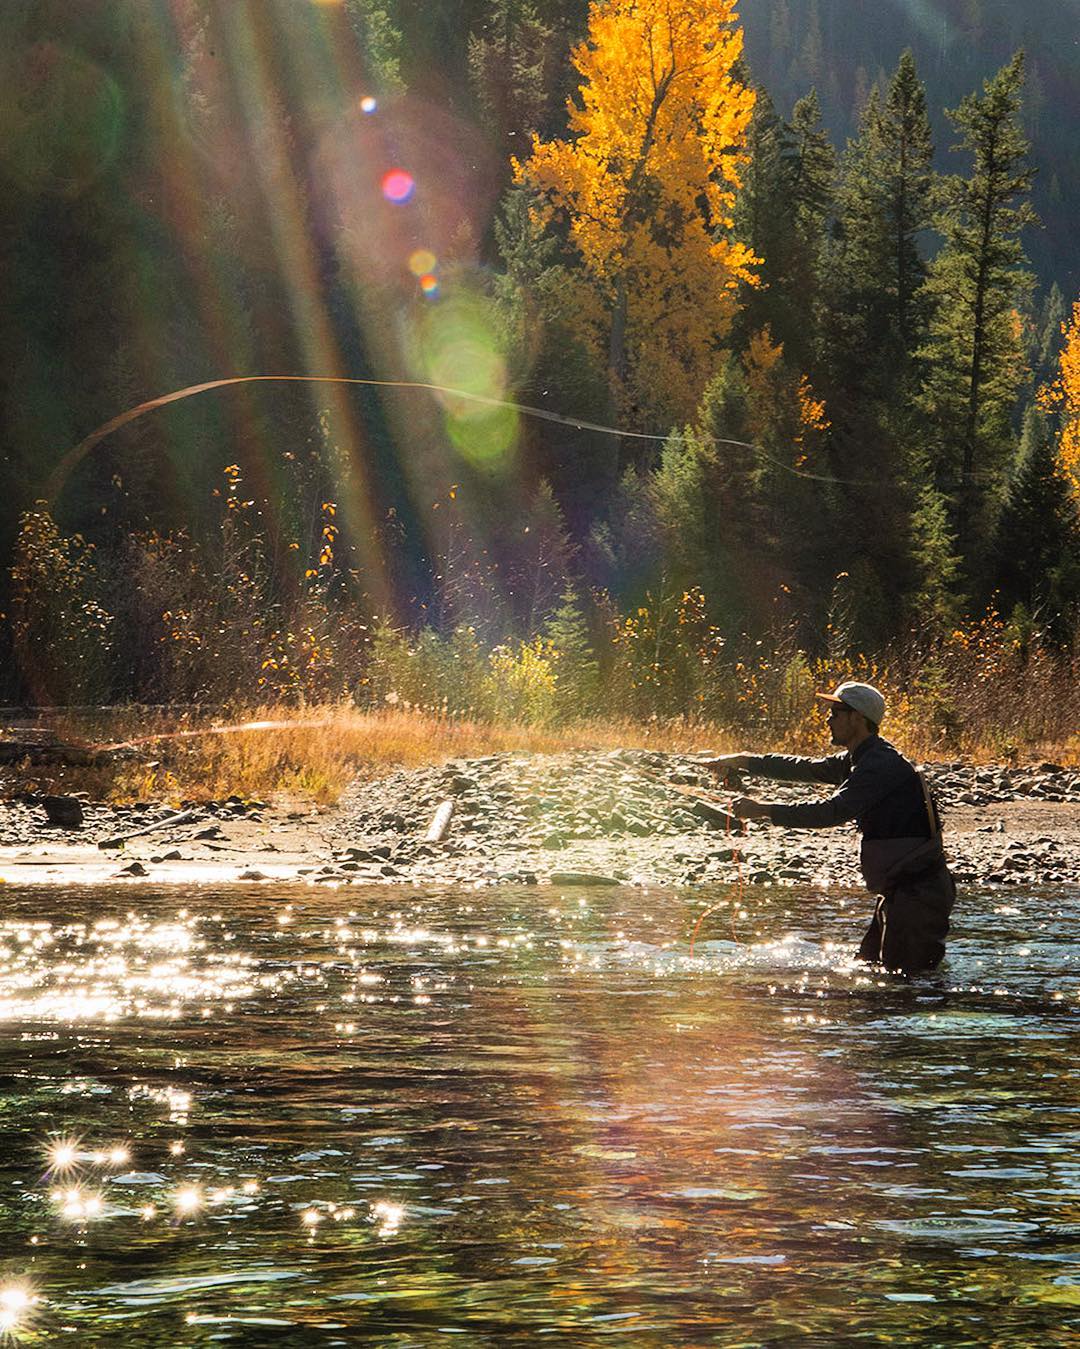 Zen moments on fall streams near Fernie